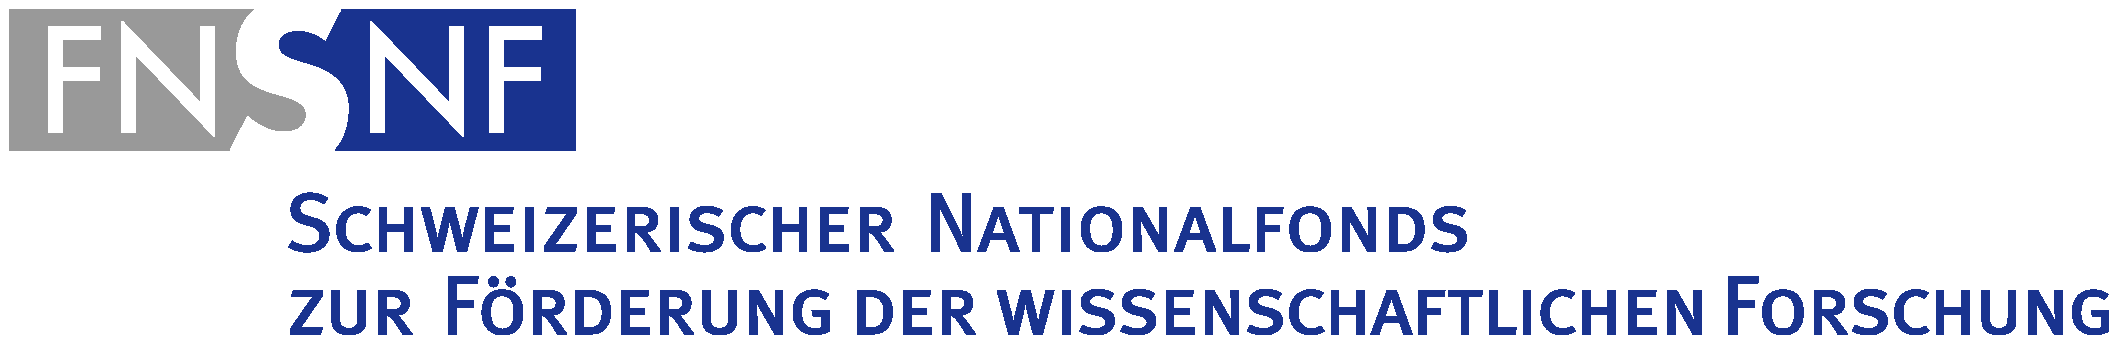 SNF - Schweizer Nationalfonds